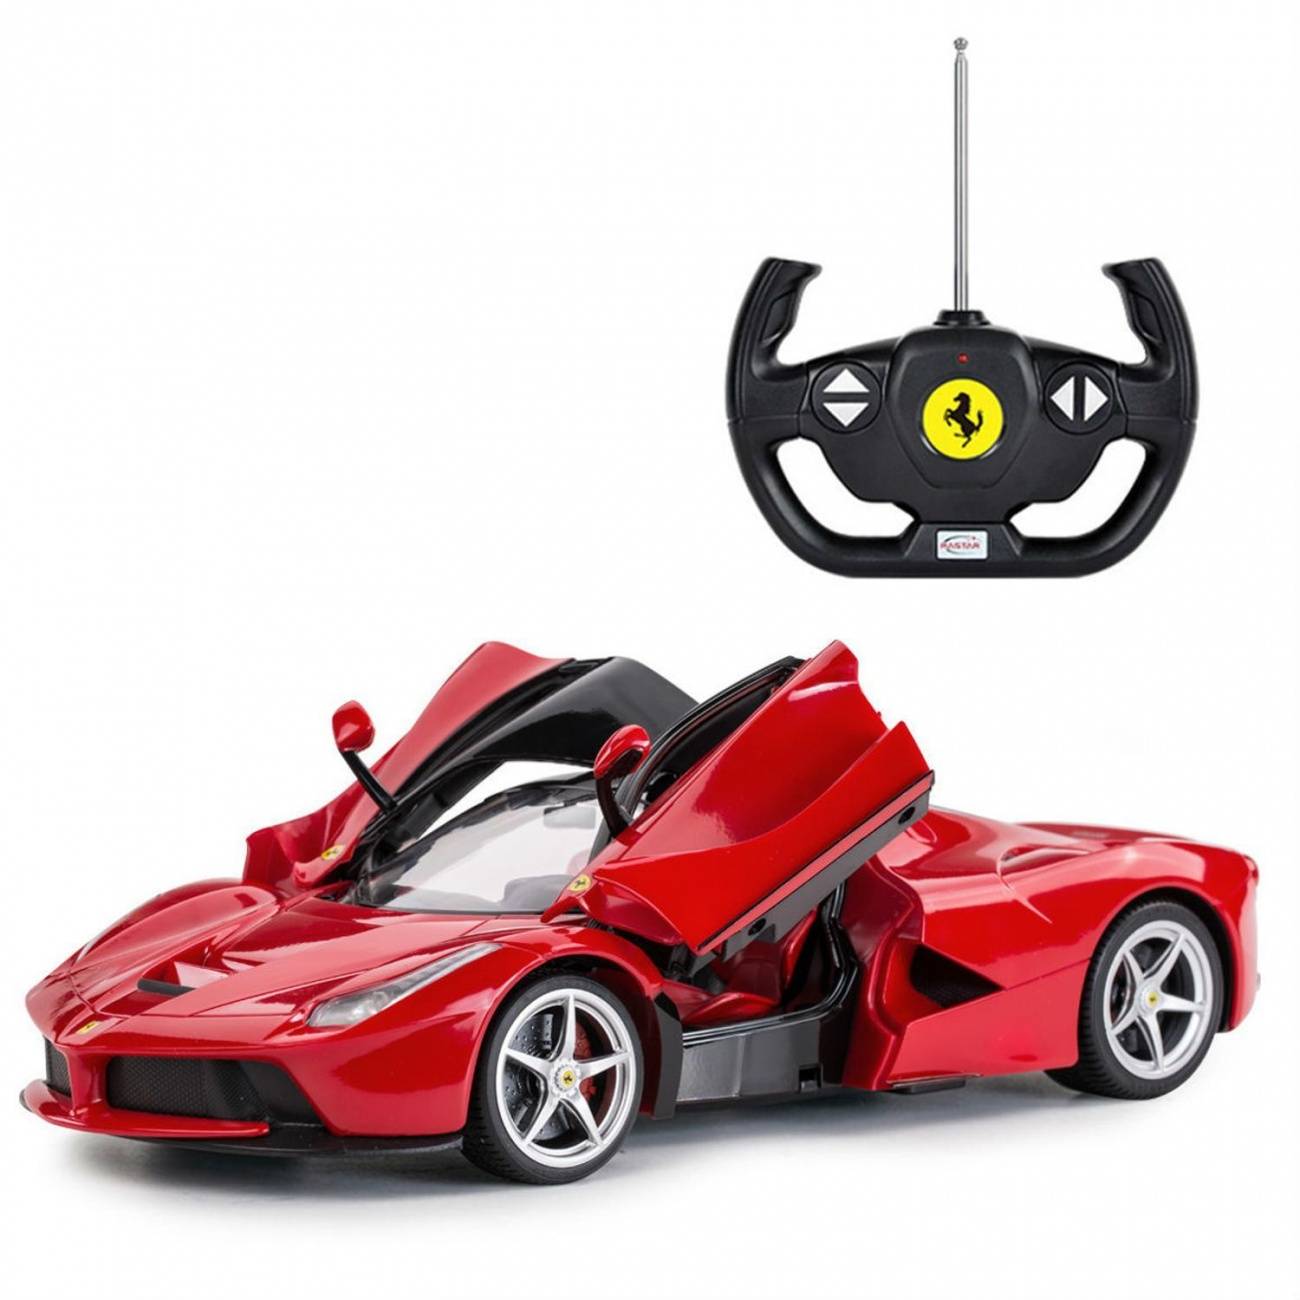 1:14 Машина р/у Ferrari LaFerrari, со световыми эффектами, открываются двери, 34х15х8см, цвет красный 27MHZ RASTAR 50100R